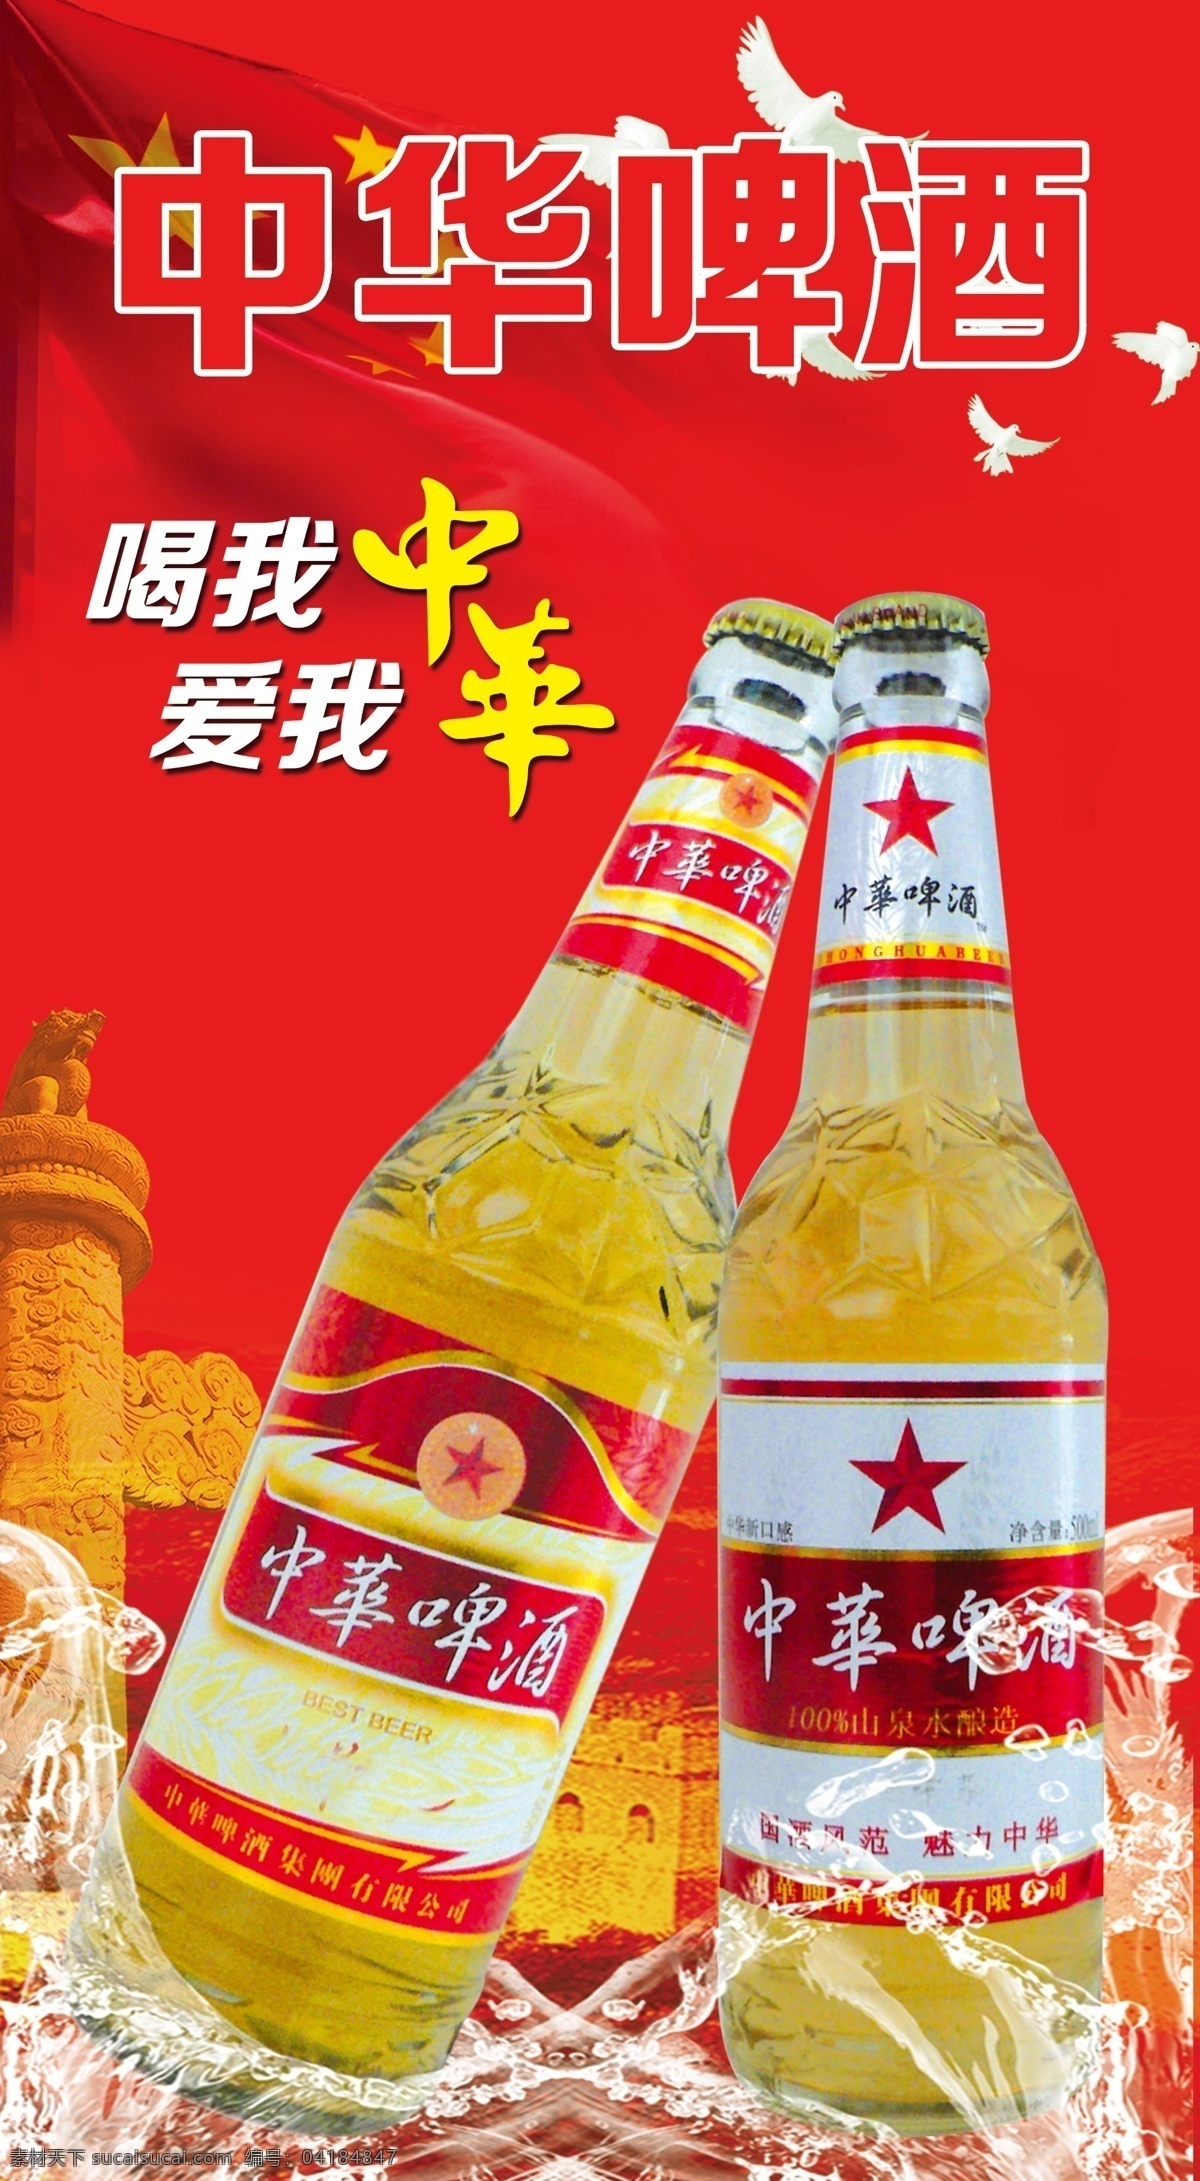 中华啤酒海报 中华 啤酒海报 红色 中华啤酒 水 国旗 白鸽 tif分层